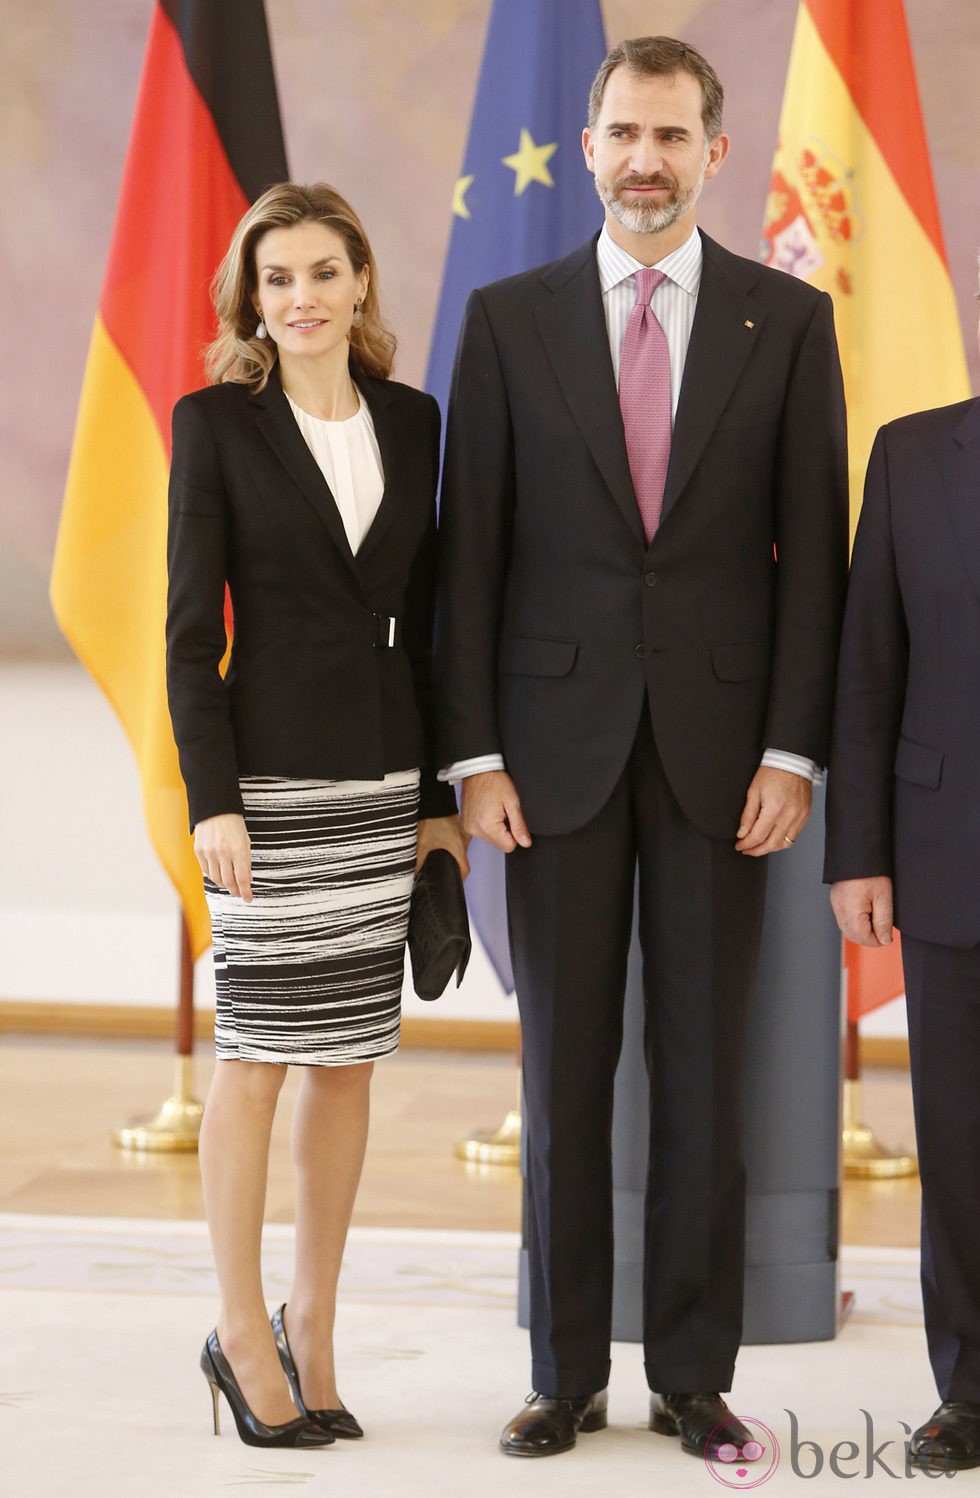 Los Reyes Felipe y Letizia en su primera visita oficial a Alemania como Reyes de España